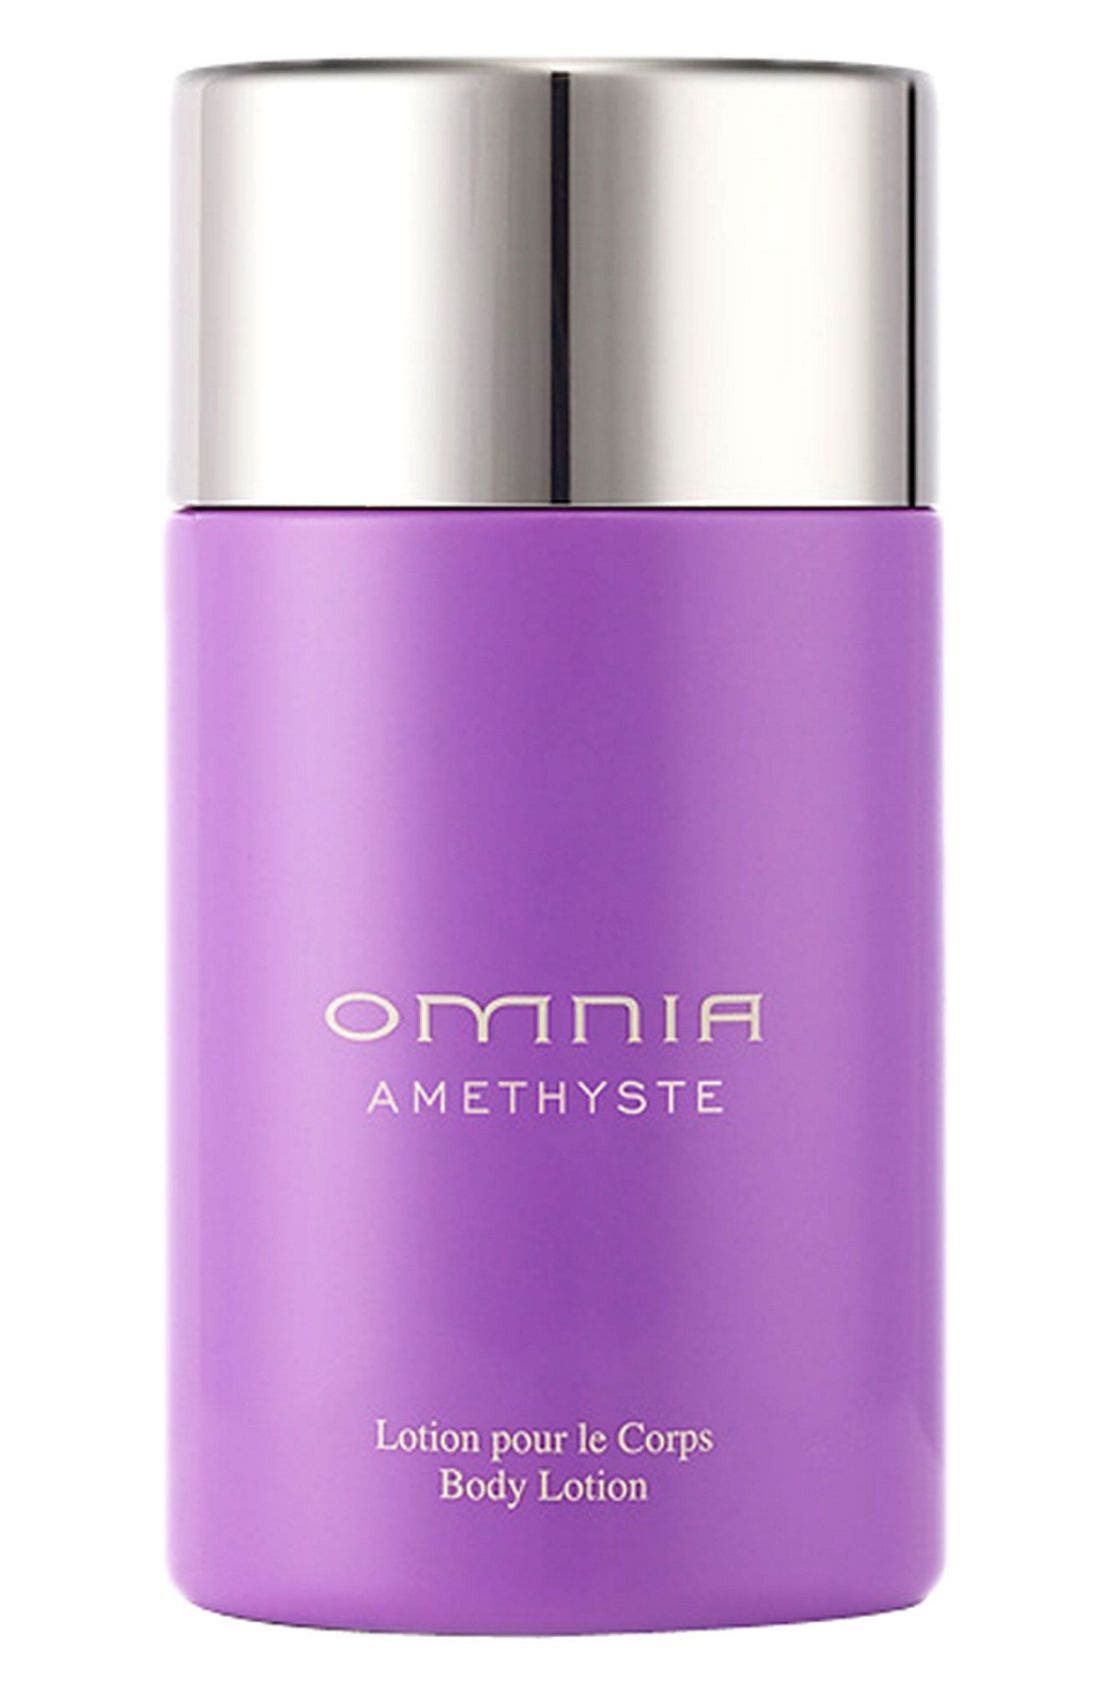 omnia crystalline body lotion